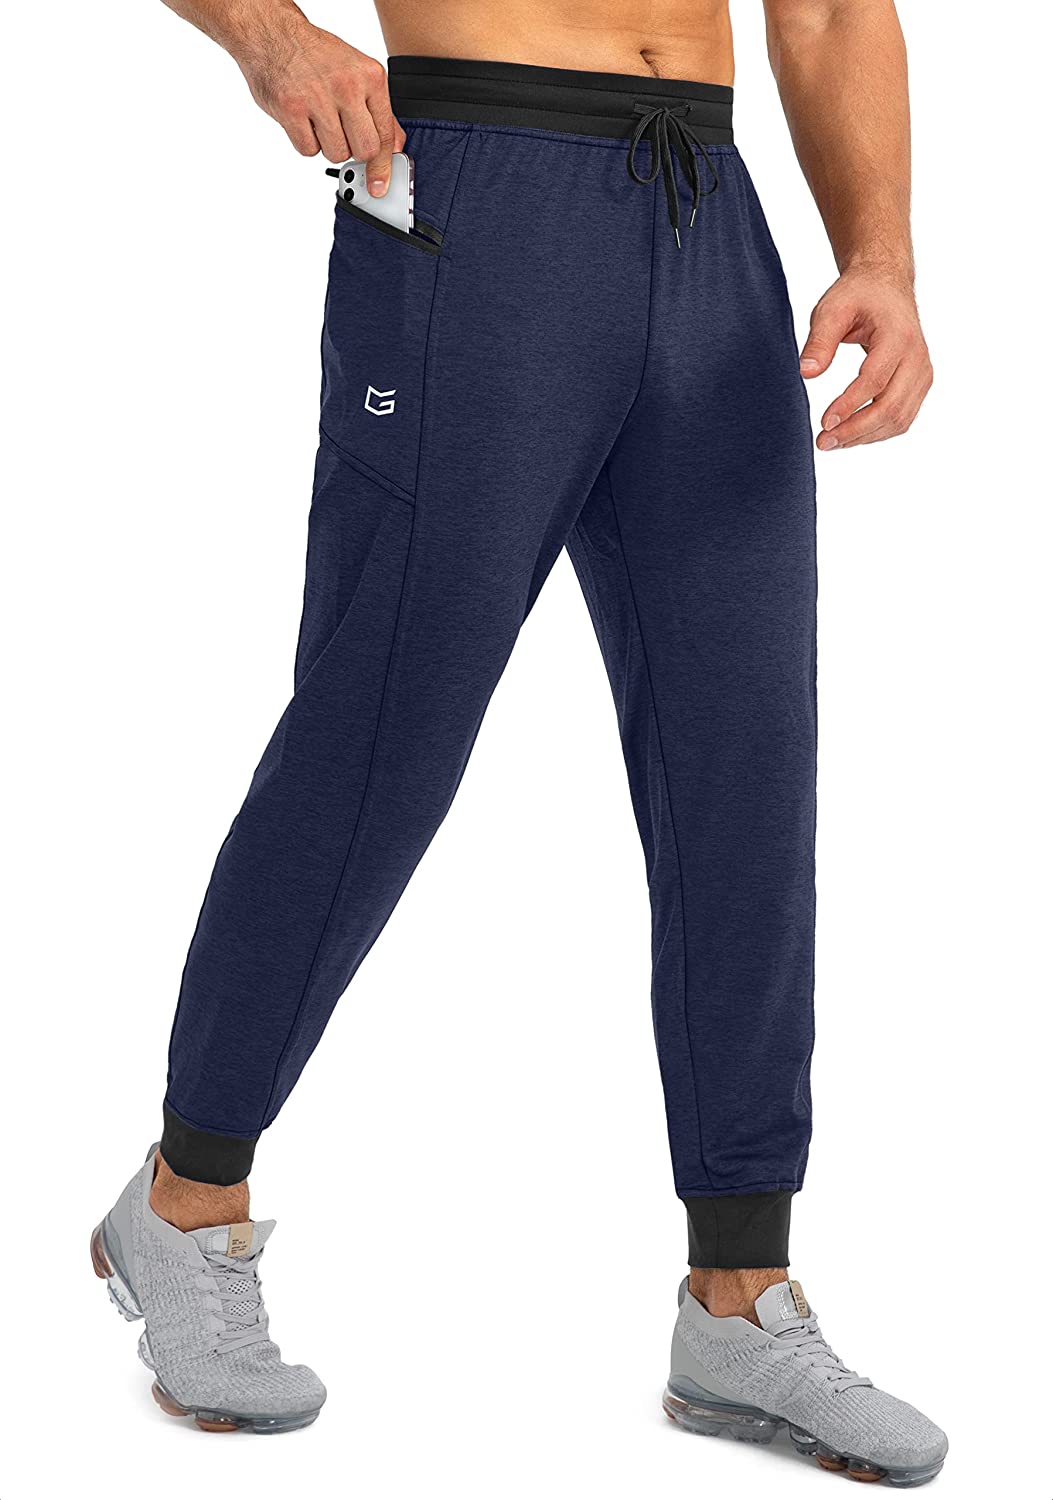 G Gradual Men's Jogger Pants with Zipper Pockets Slim Joggers for